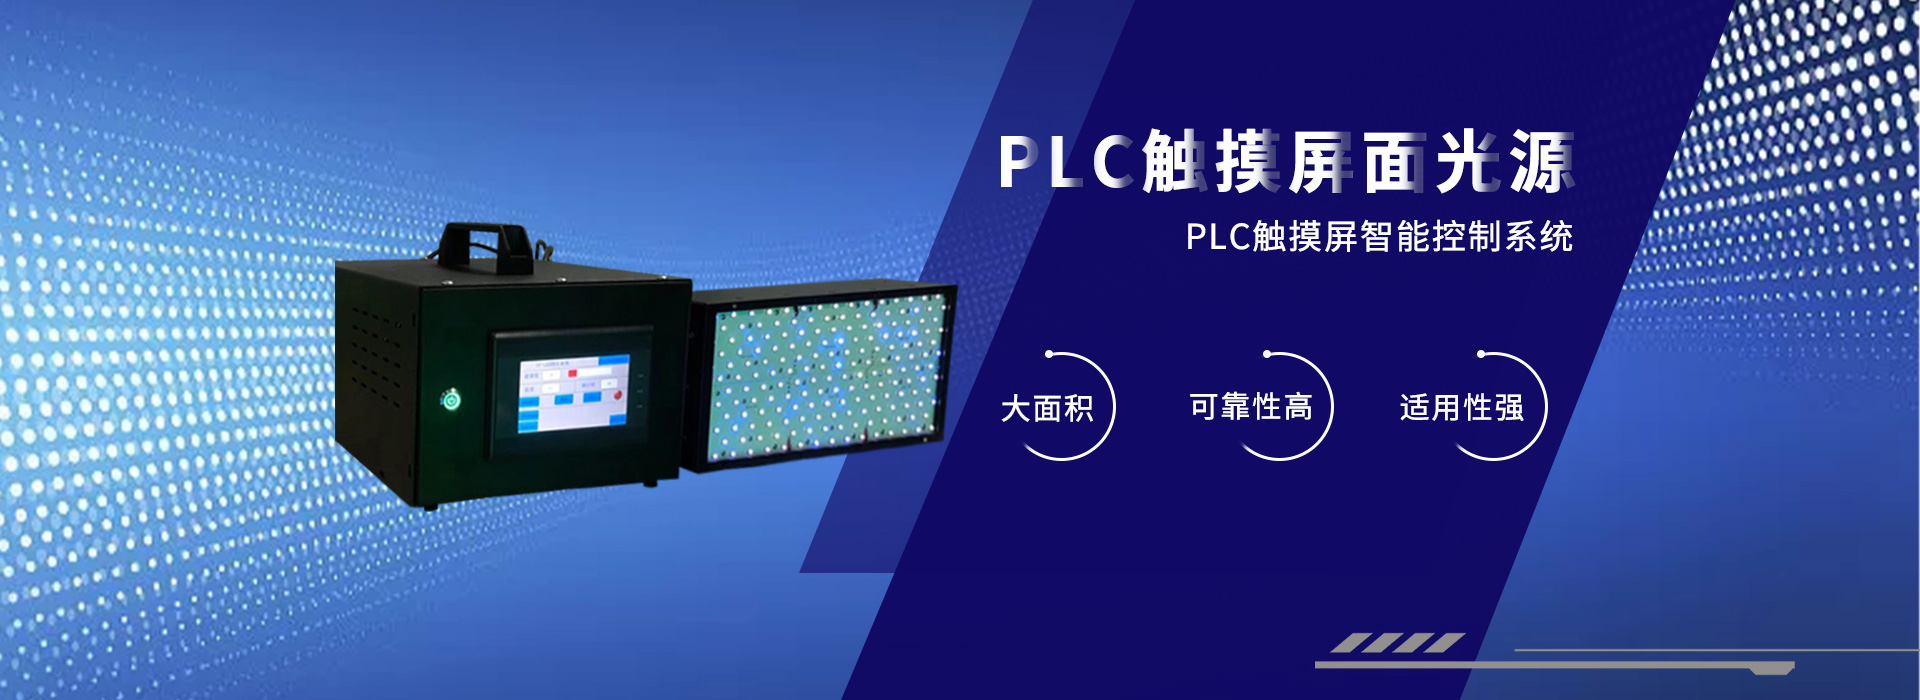 深圳UV固化燈,UVled固化設備廠家